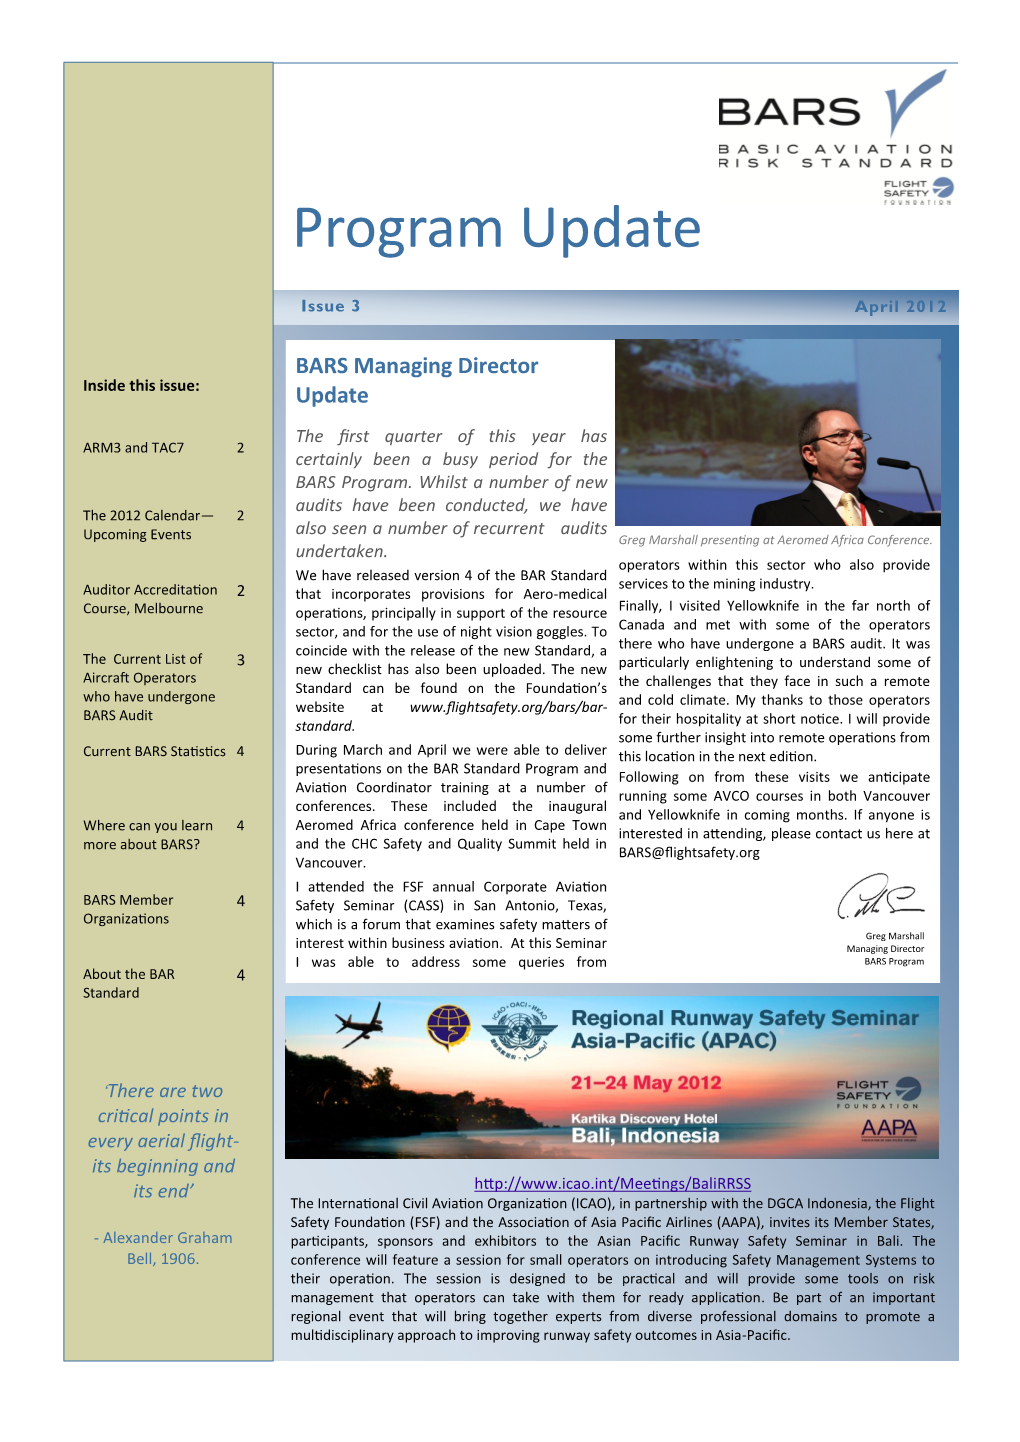 BARS Program Update April 2012 Newsletter